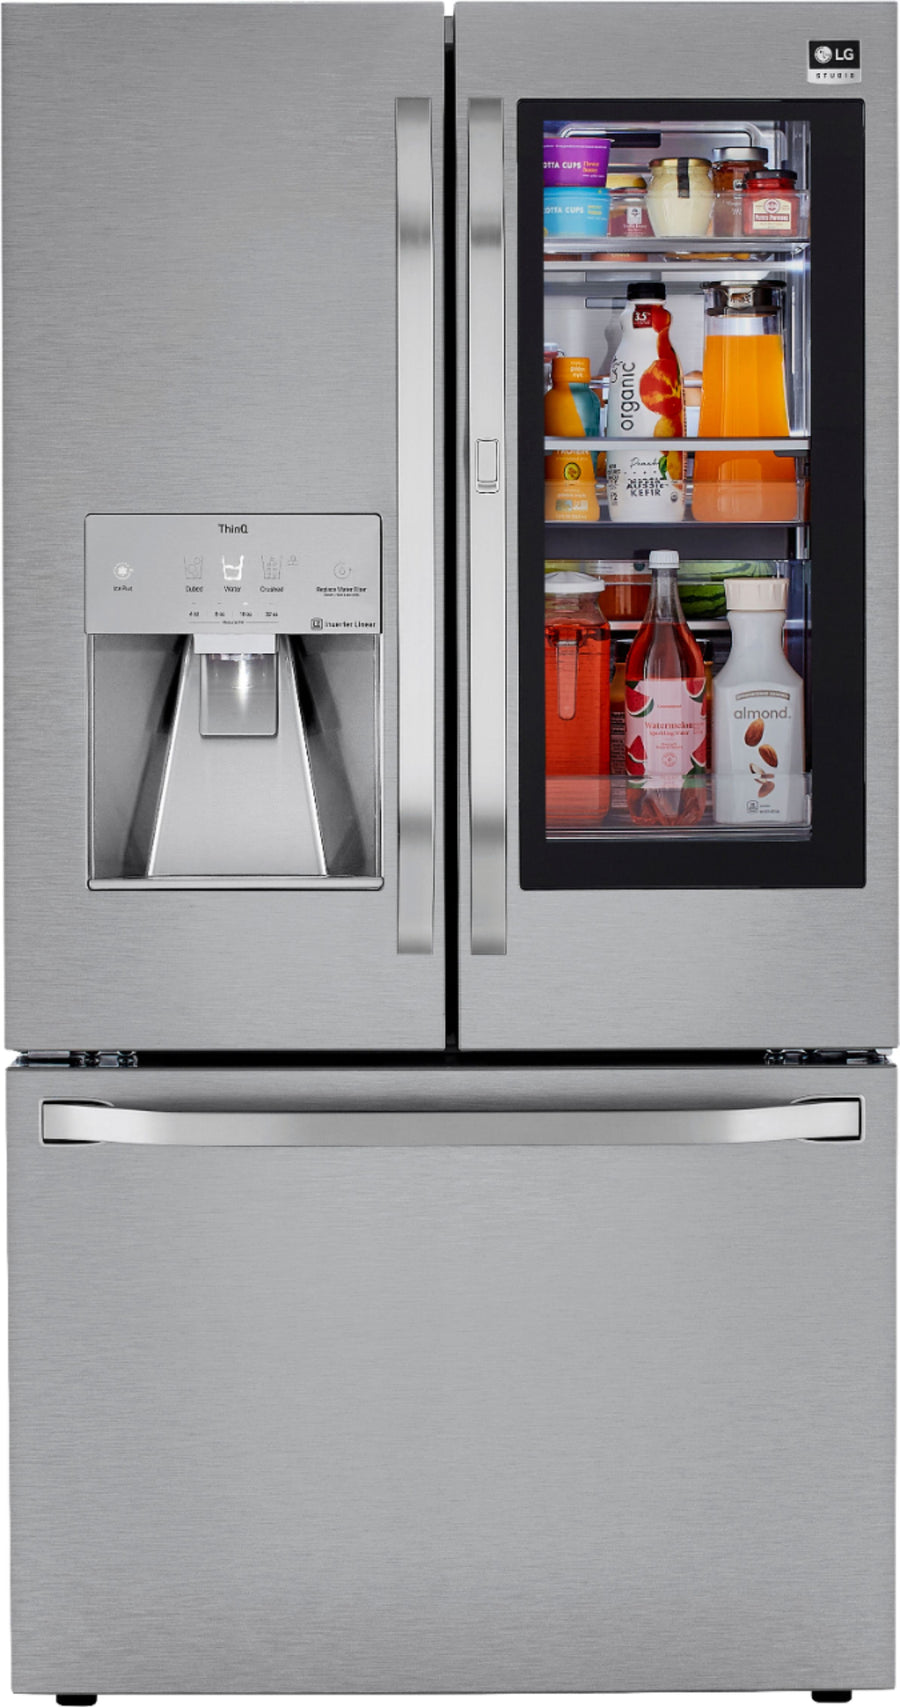 LG - STUDIO 23.5 Cu. Ft. French InstaView Door-in-Door Counter-Depth Refrigerator with Craft Ice - Stainless steel_0